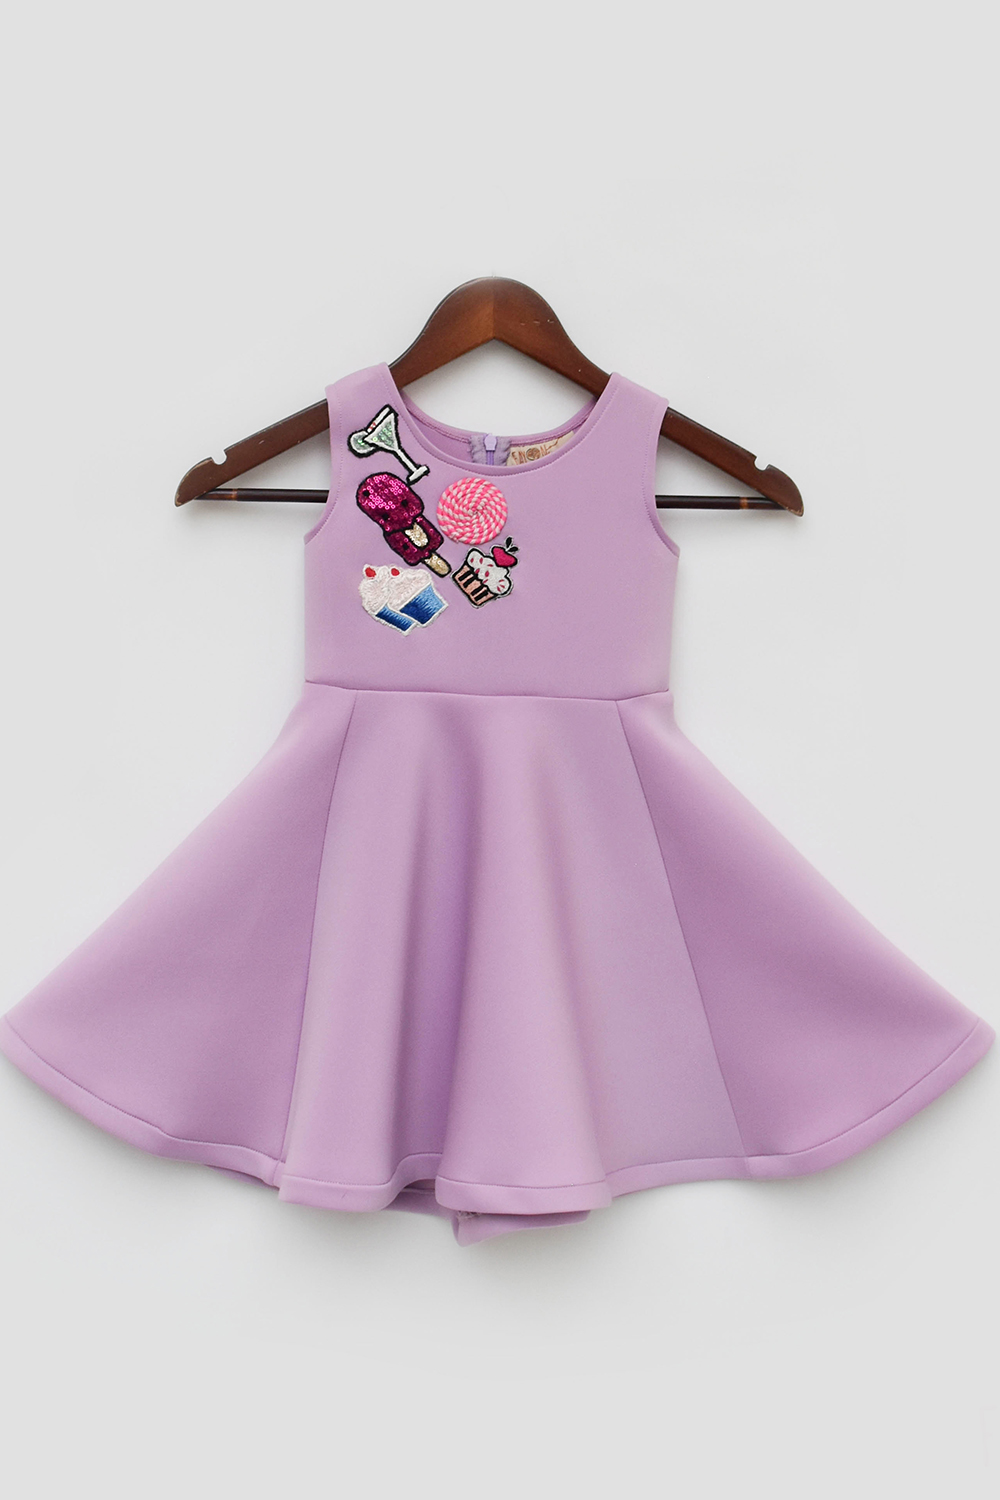 Lilac Lycra Dress